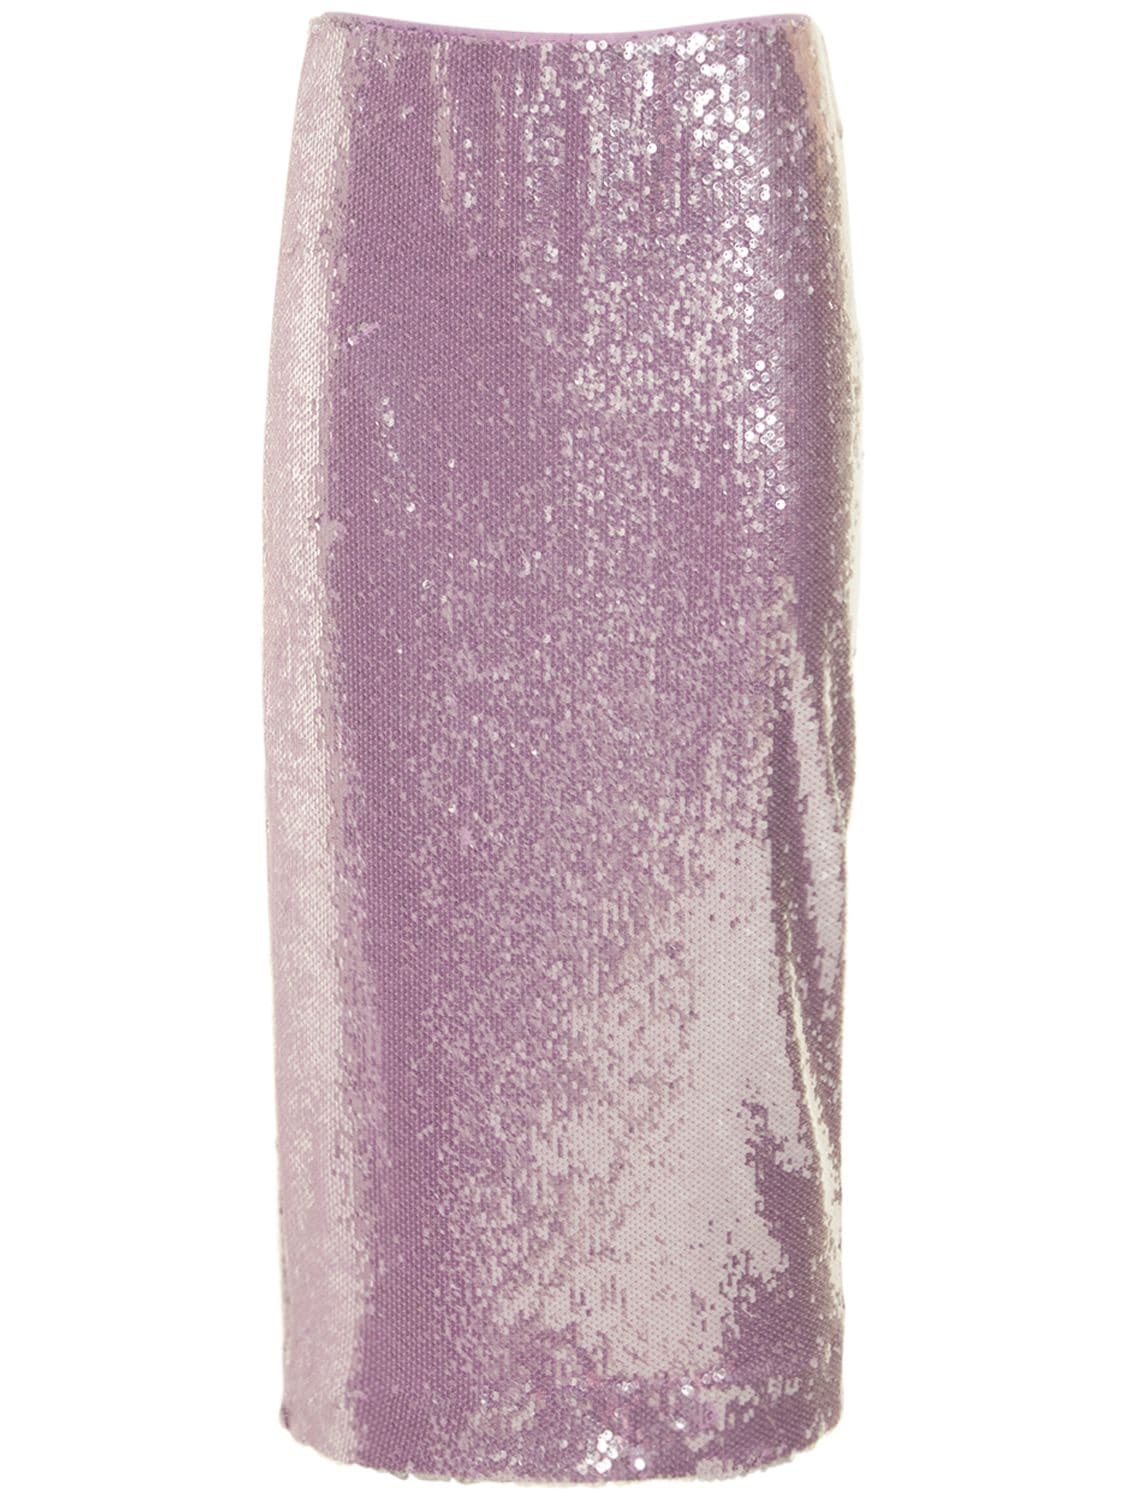 Tasha Embellished Pencil Midi Skirt